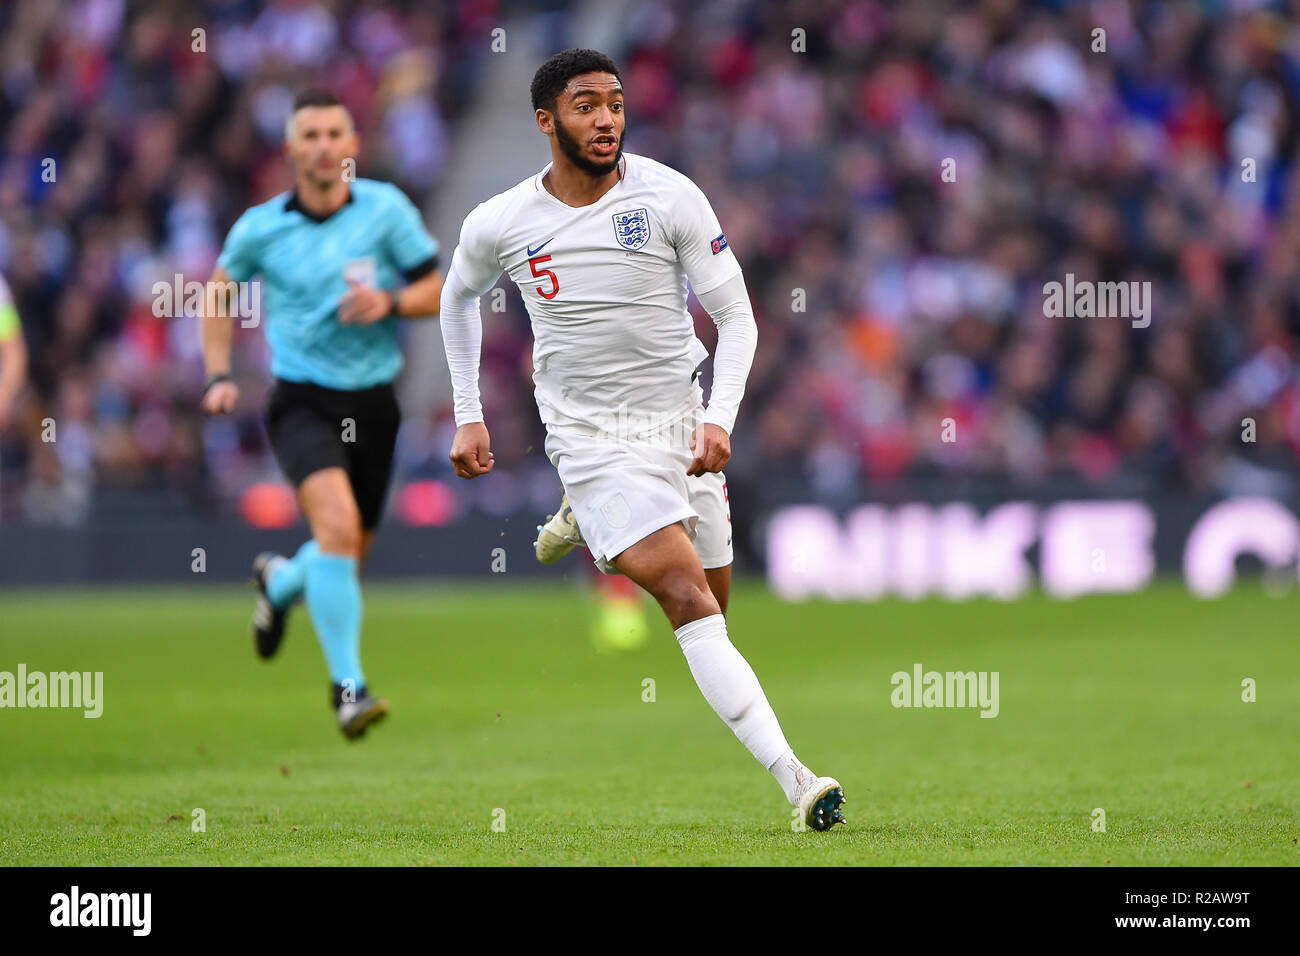 Londres, Royaume-Uni. 18 novembre 2018. Angleterre defender Joe Gomez (5) au cours de l'UEFA Ligue Nations match entre l'Angleterre et la Croatie au stade de Wembley, Londres, le dimanche 18 novembre 2018. (©MI News & Sport Ltd | Alamy Live News) Banque D'Images